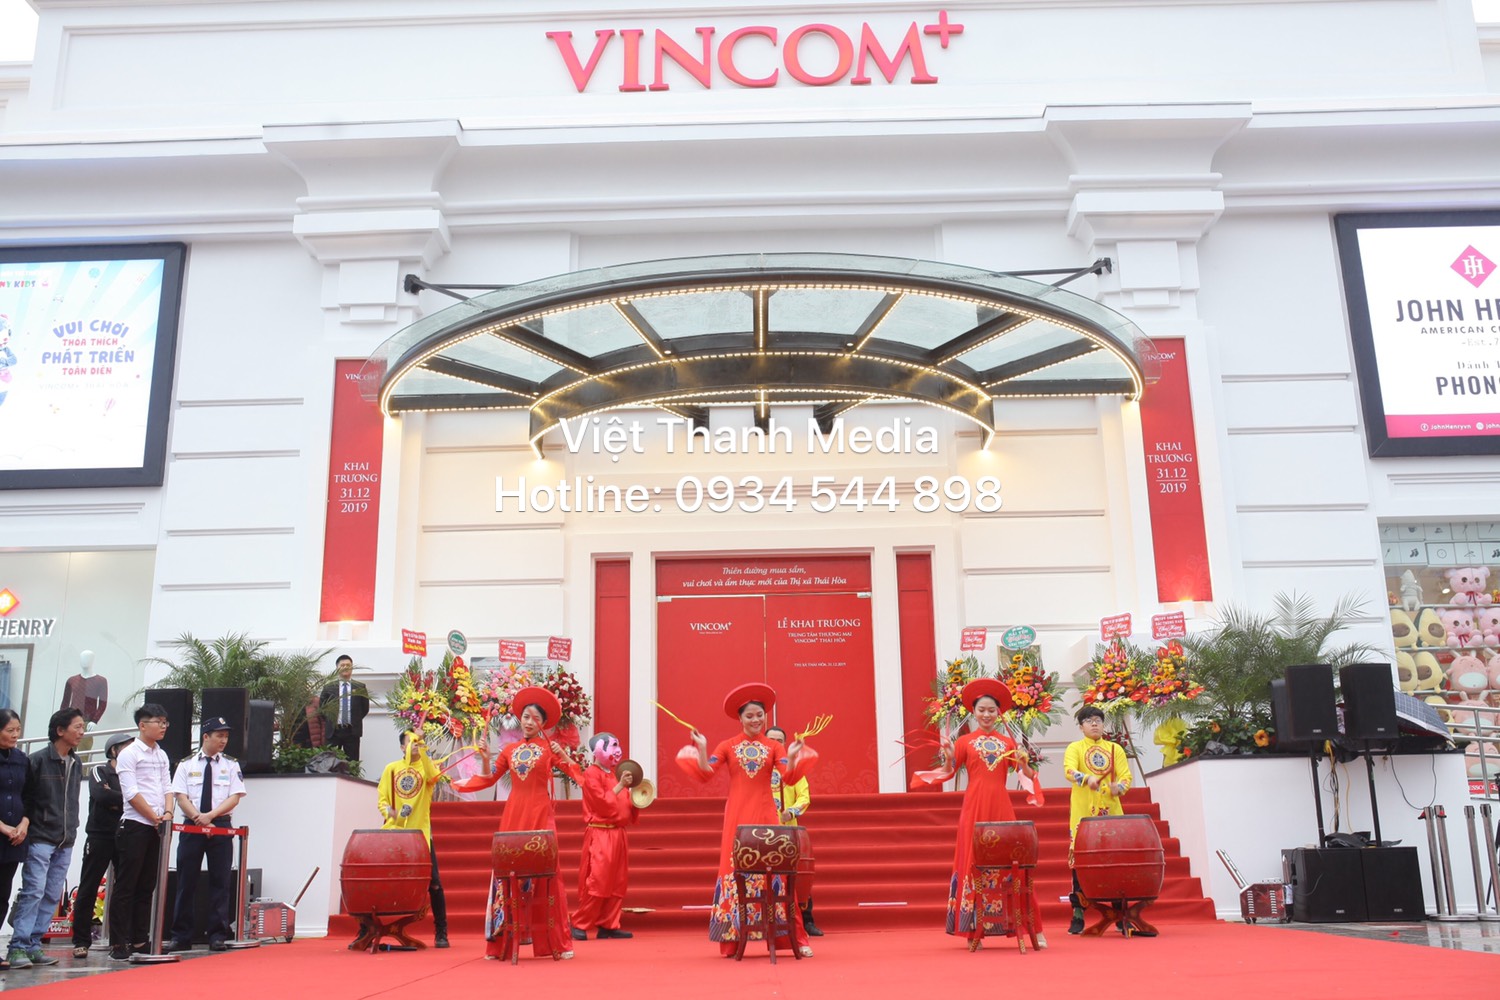 Chúc mừng Khai trương Vincom+ Thái Hòa Nghệ An - ĐV tổ chức Sk Việt Thanh Media 0934 544 898